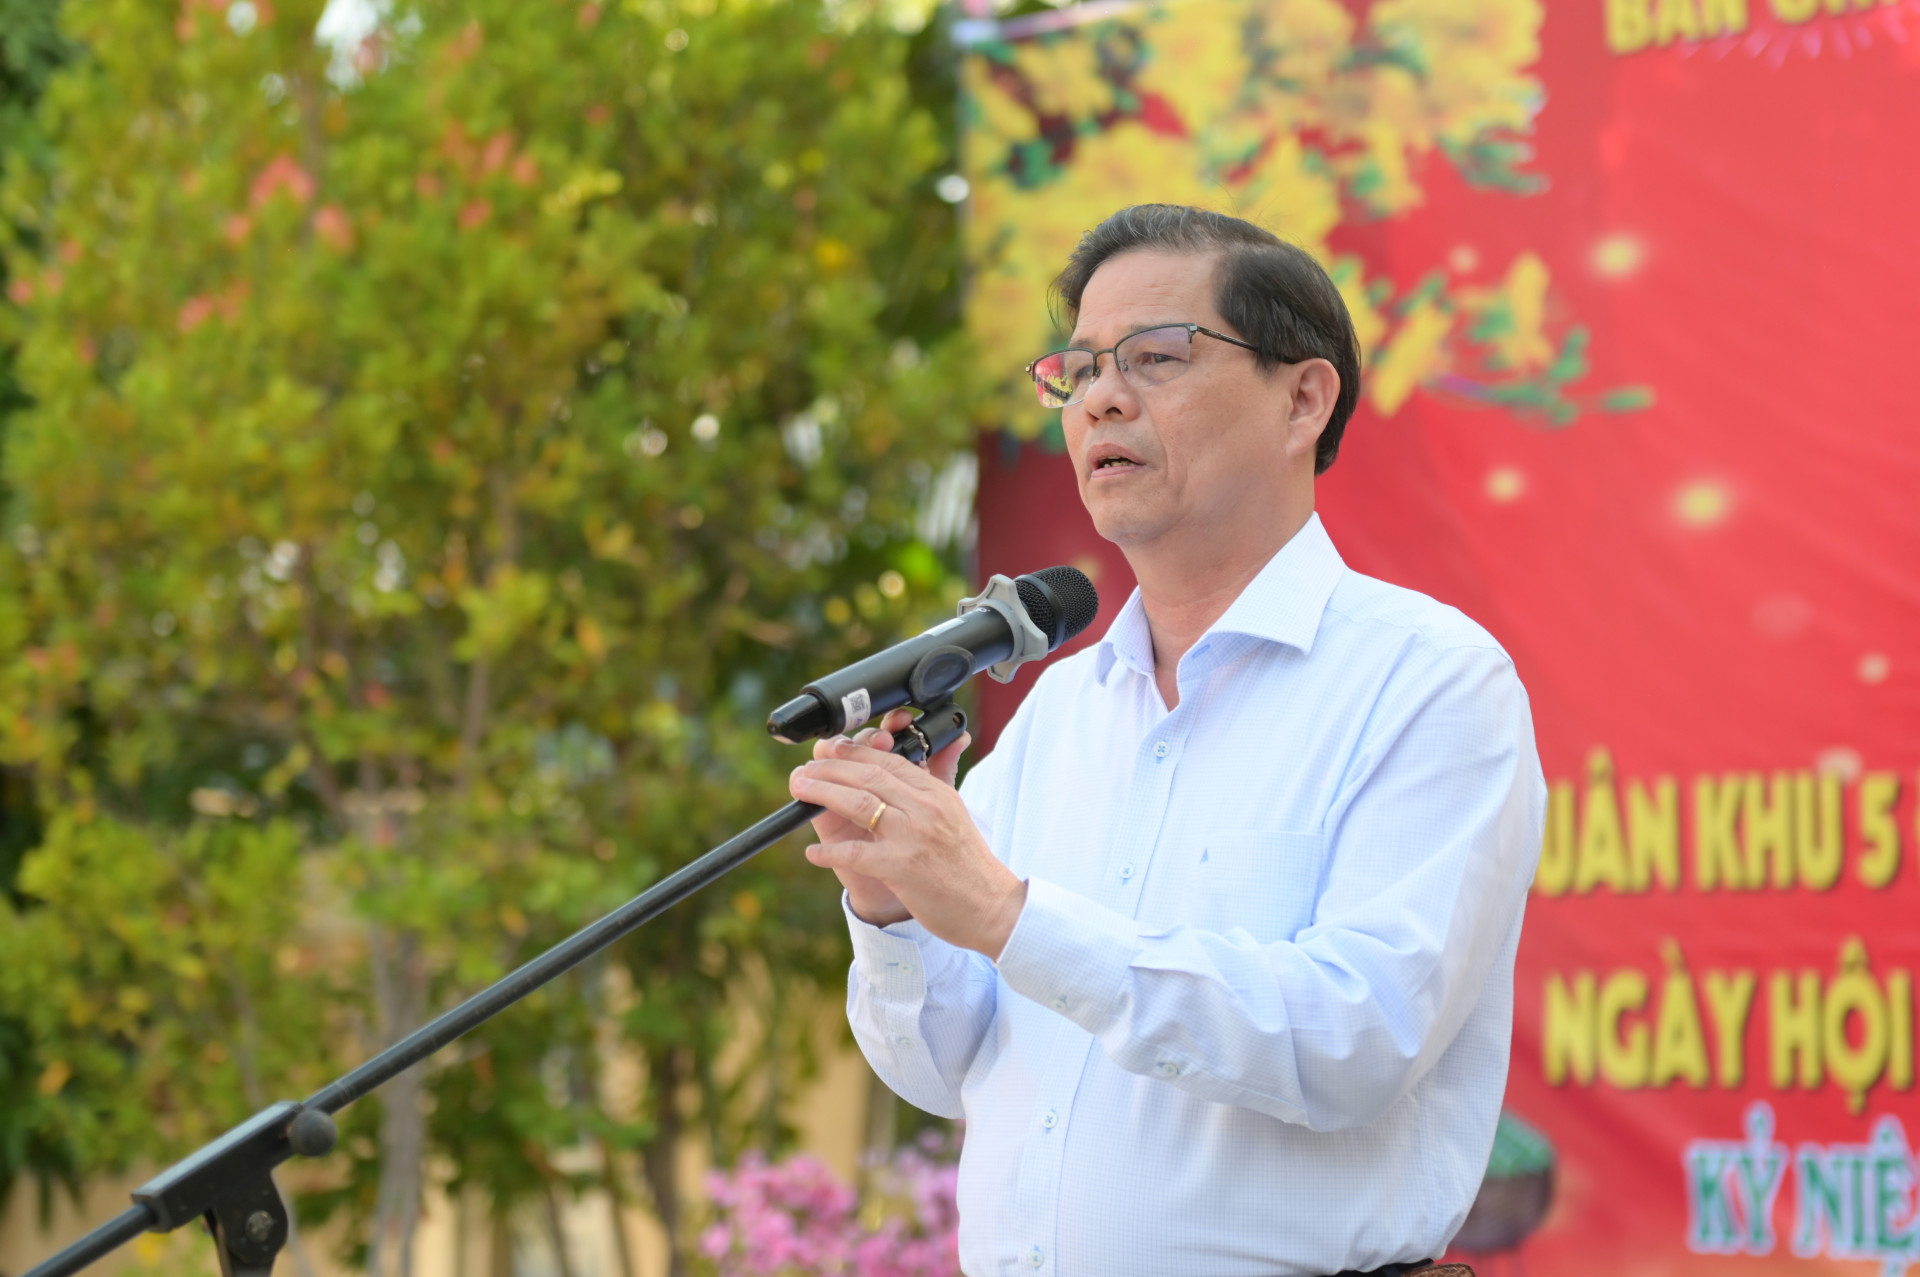 Đồng chí Nguyễn Tấn Tuân phát biểu tại ngày hội.